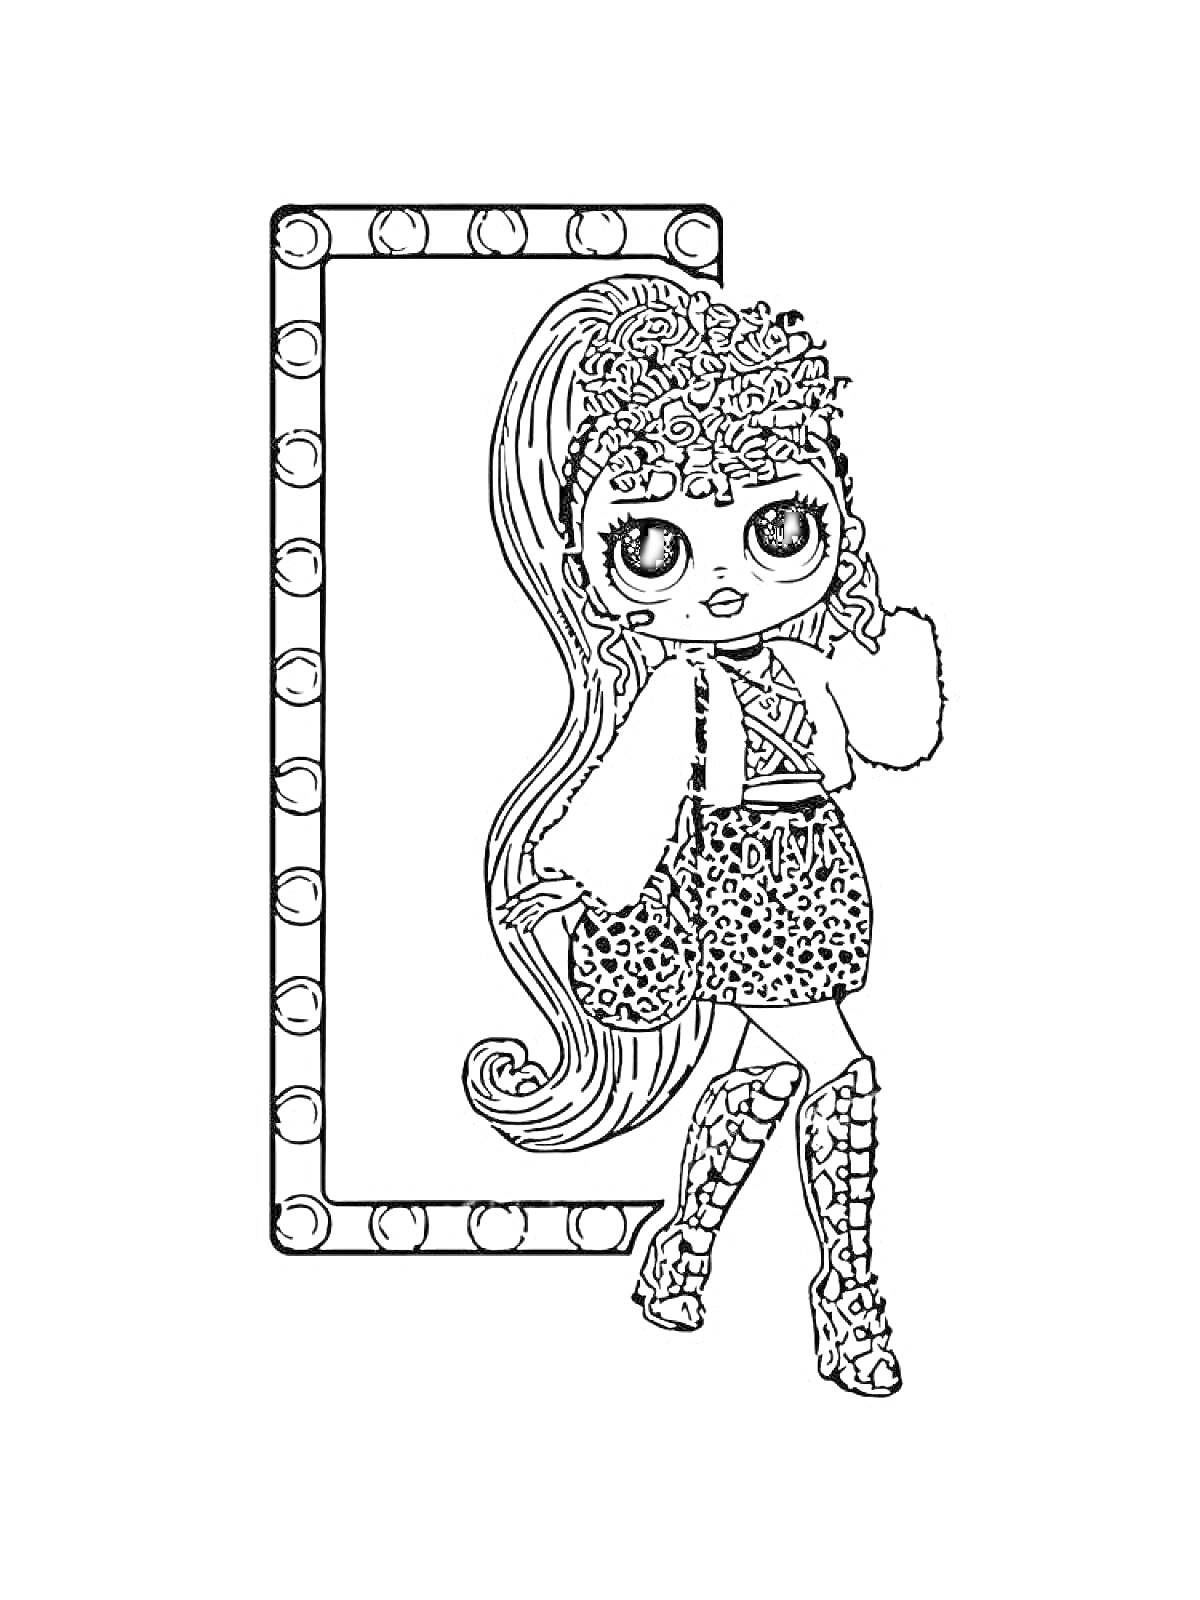 Раскраска Кукла ЛОЛ с длинными волосами в леопардовой юбке и высоких ботинках на фоне зеркала с лампочками